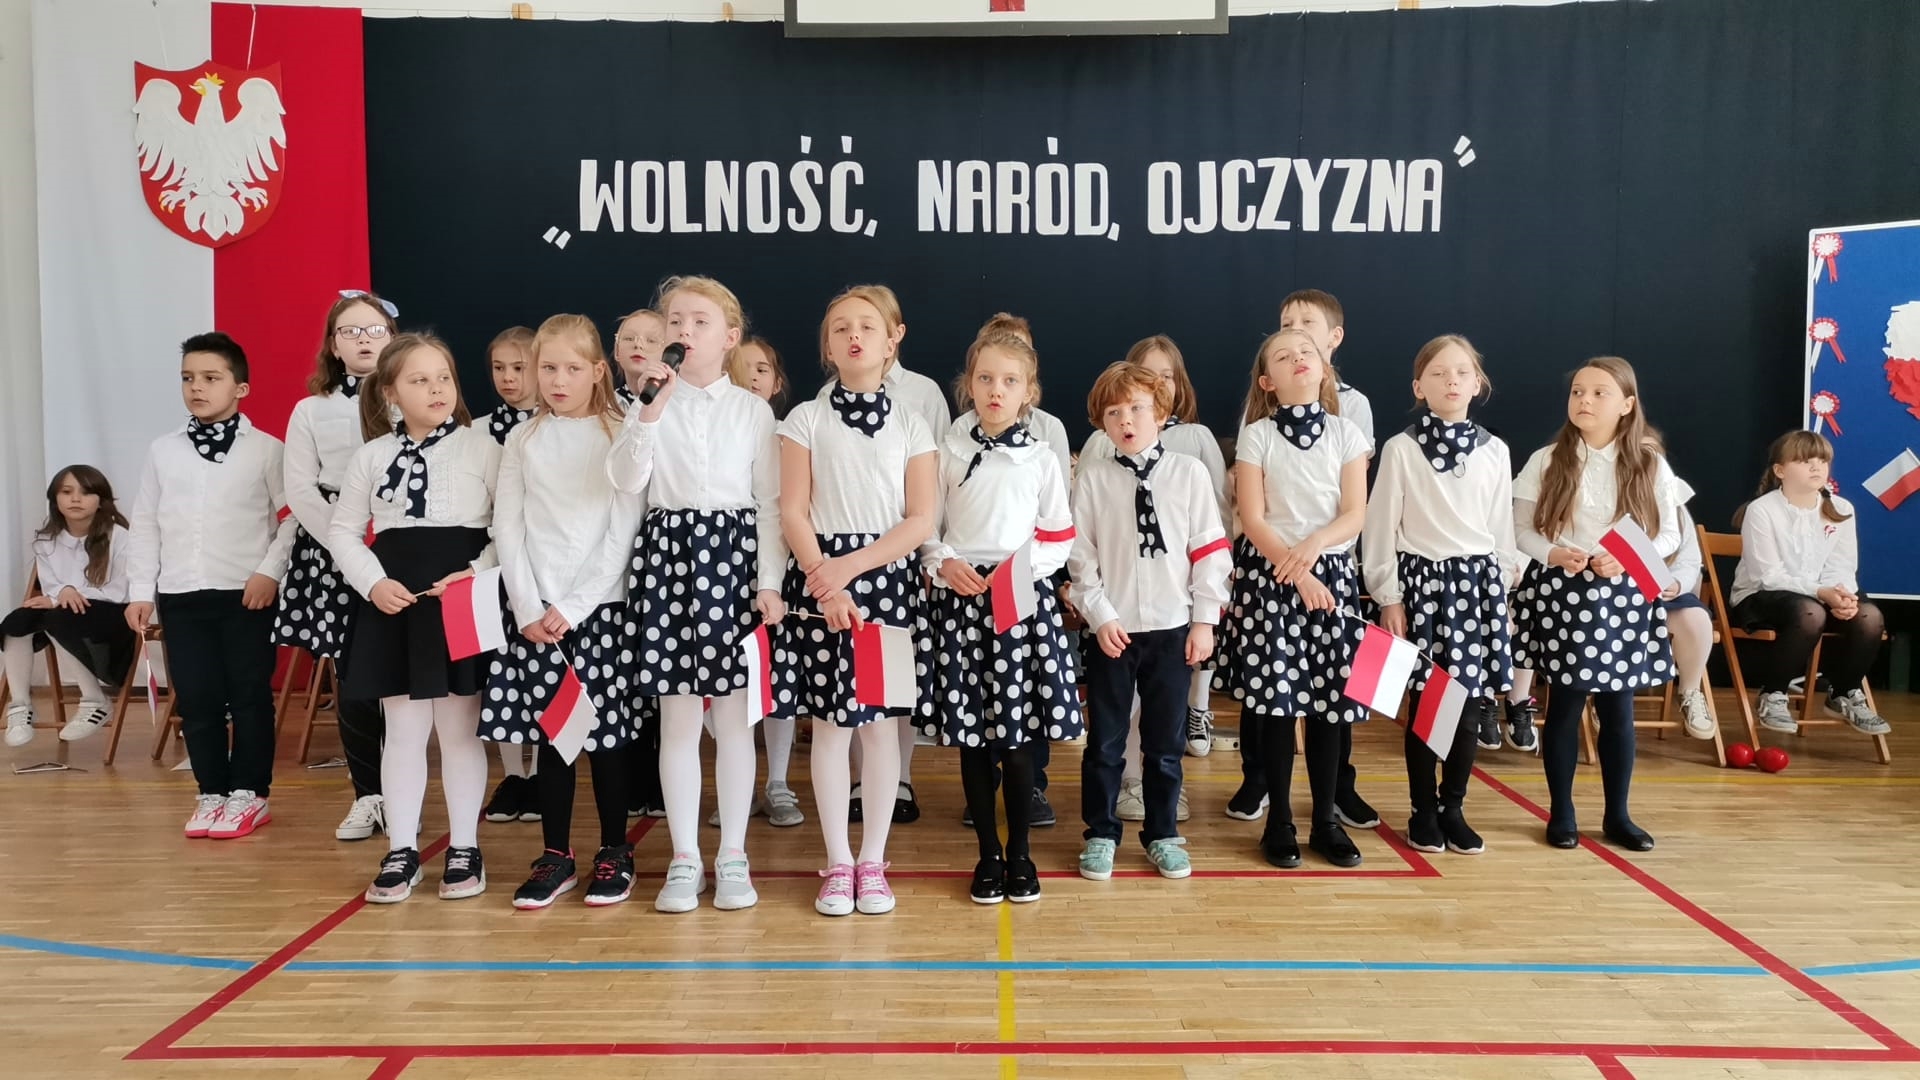  Grupa dzieci ubranych w jednakowe stroje, dziewczynki w spódnice z groszkami, wszyscy z białymi koszulami. Jedna z dziewcząt trzyma mikrofon. W tle dekoracja, po jej lewej stronie flaga Polski i godło, na środku napis Wolność naród ojczyna.